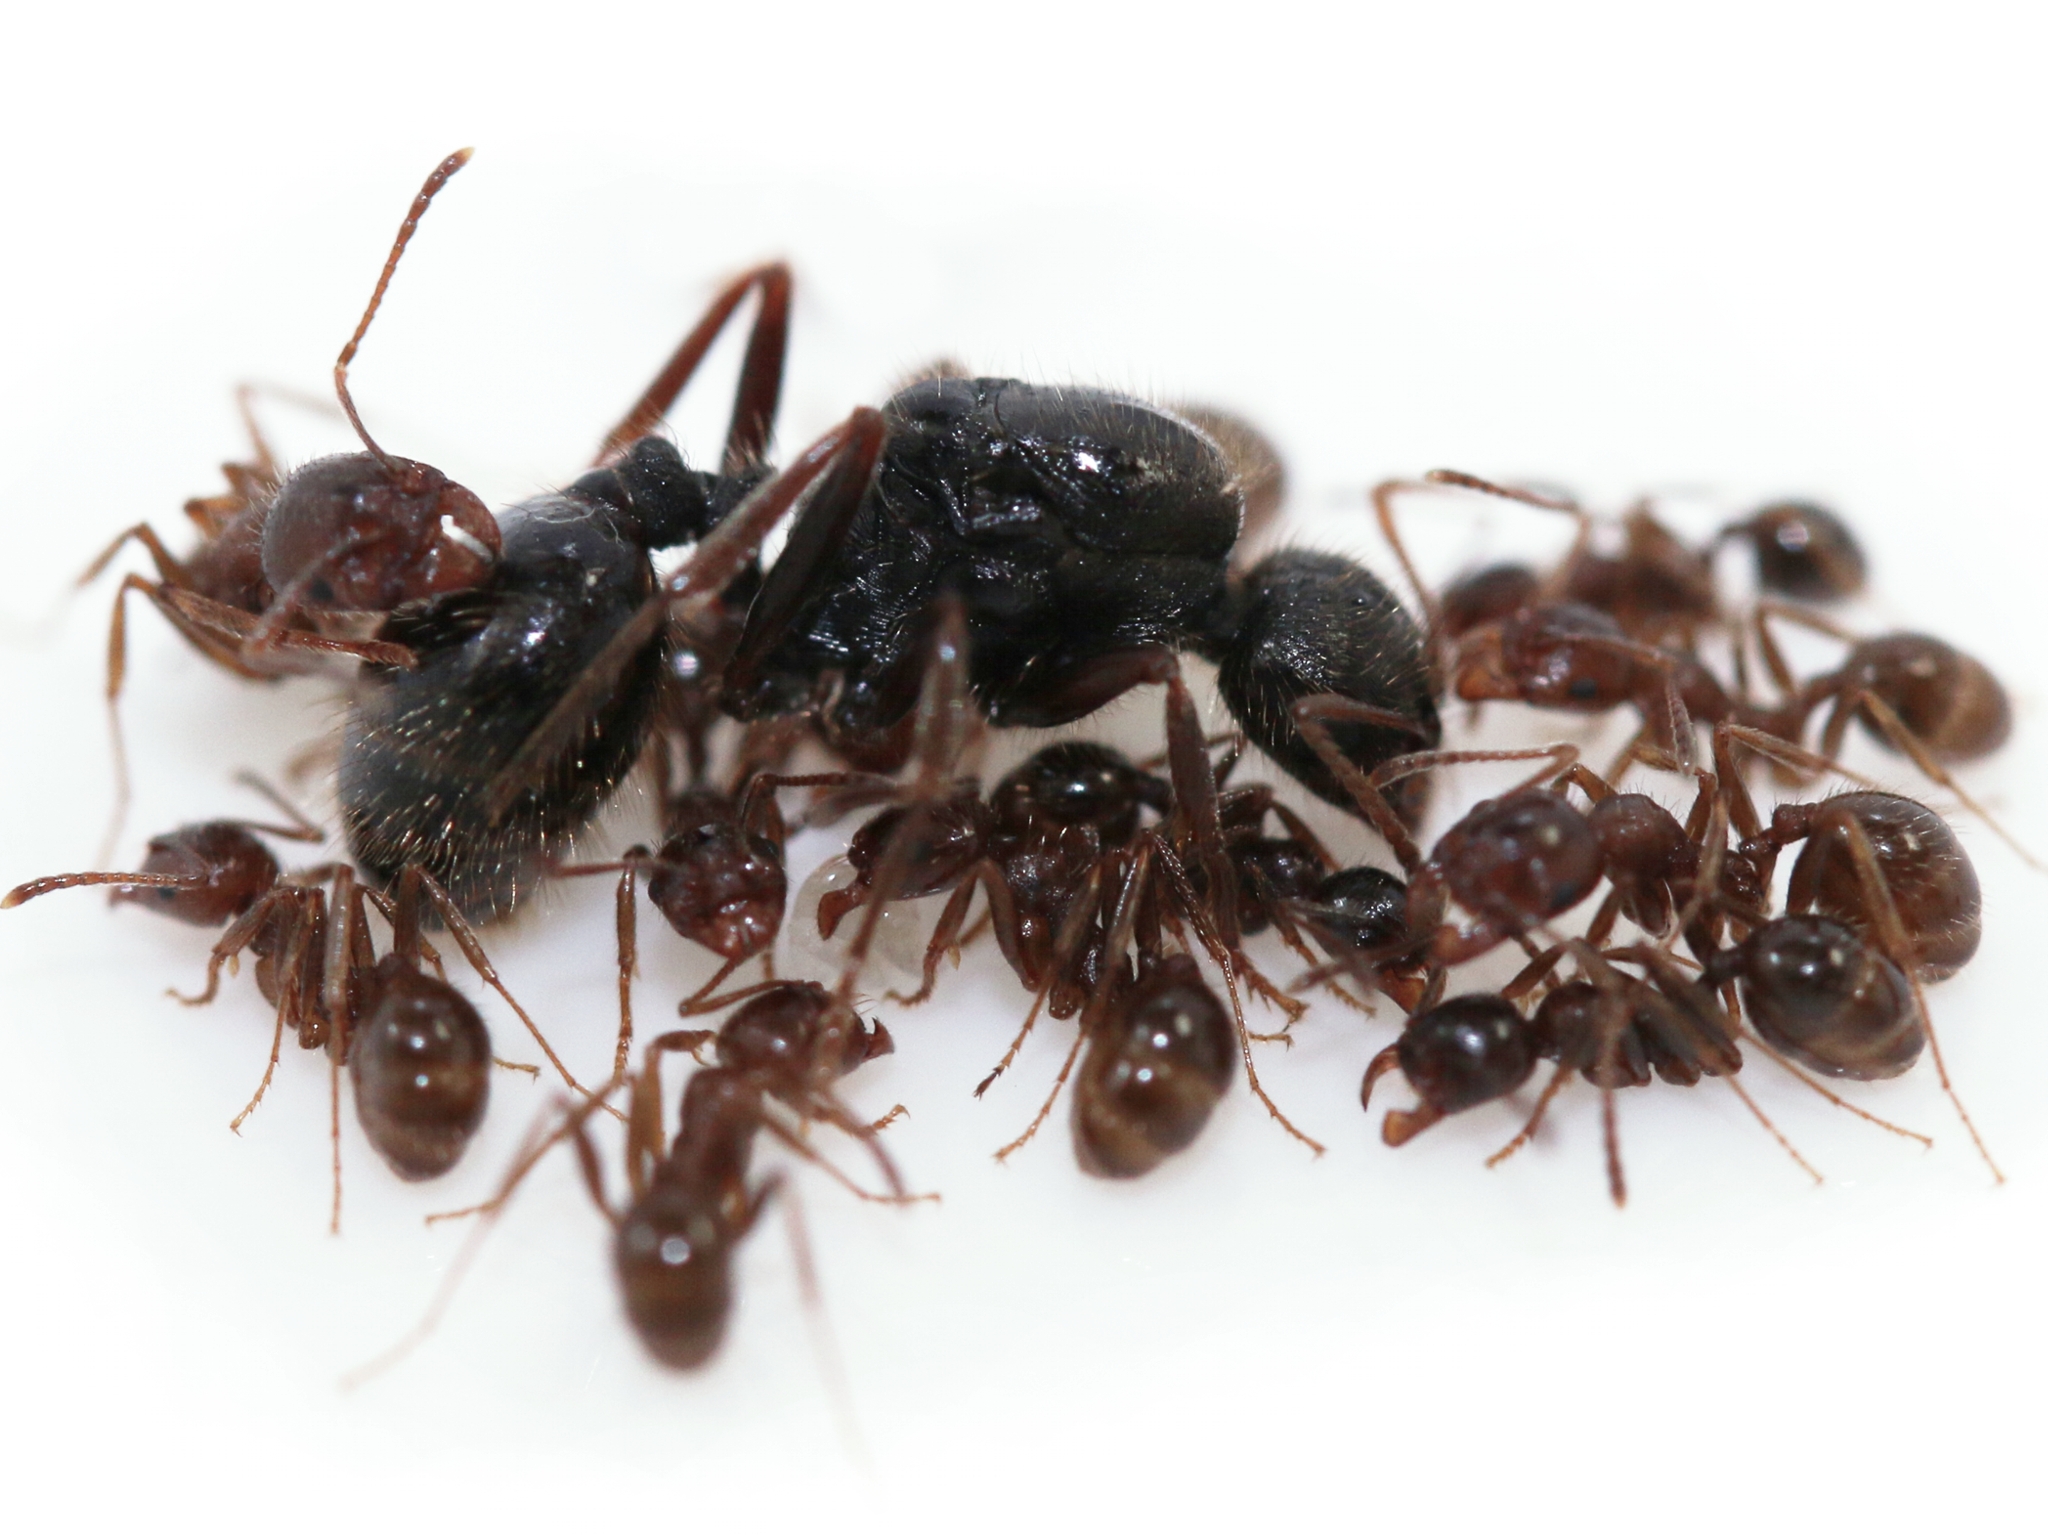 ANTSTORE - Ameisenshop - Ameisen kaufen - Heizmatte 14 W